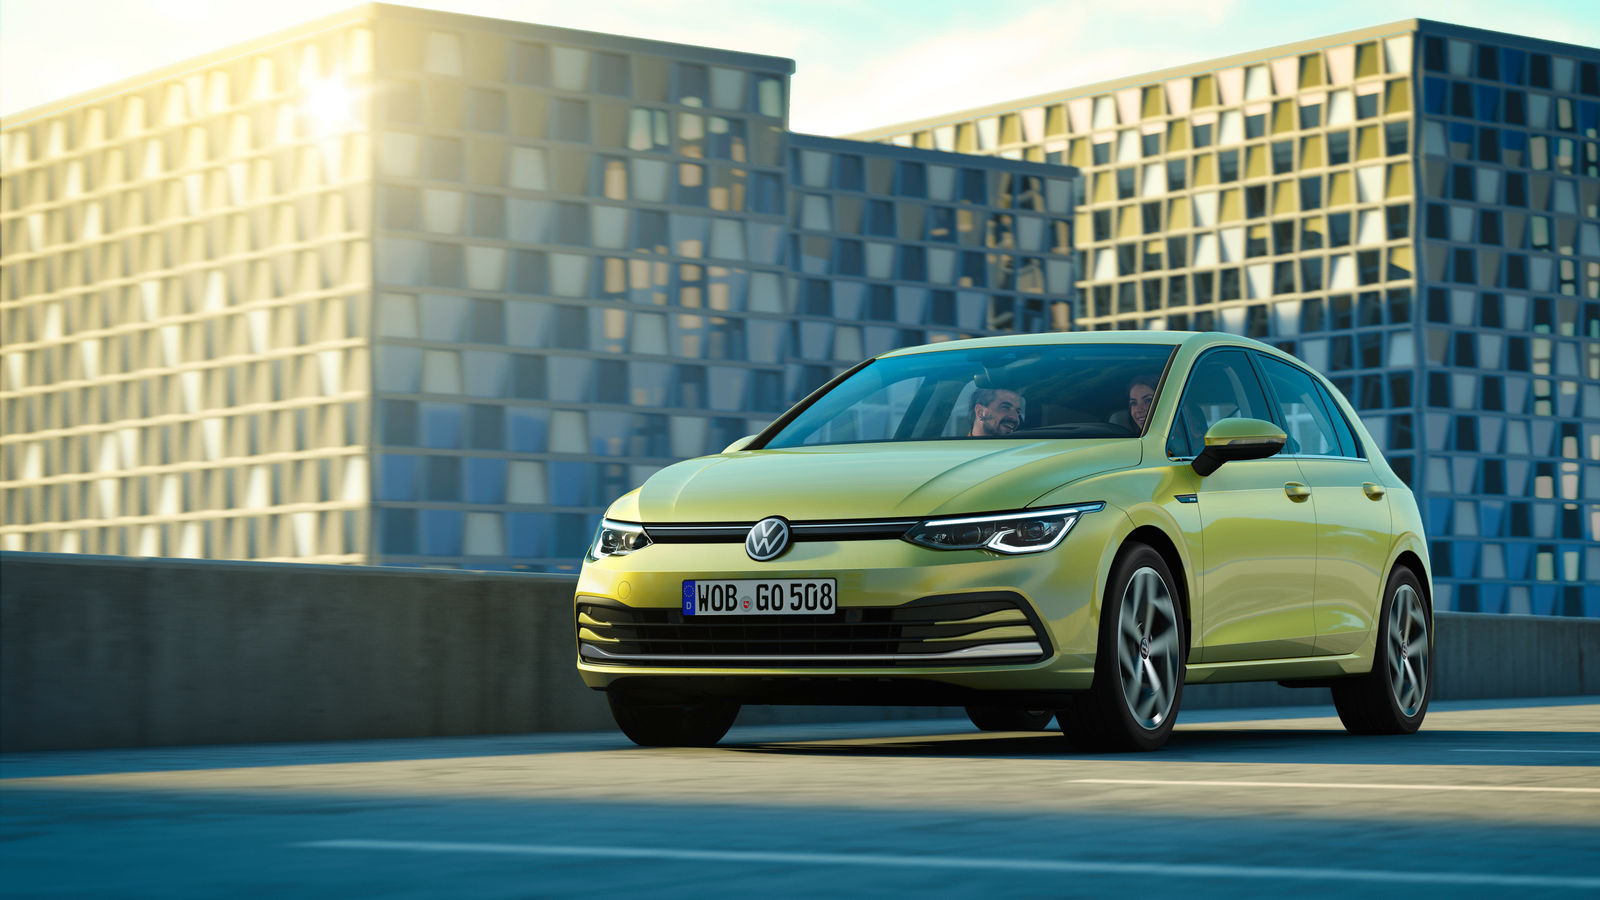 3ve-Blog - Generation digital: Der neue Volkswagen Golf 8